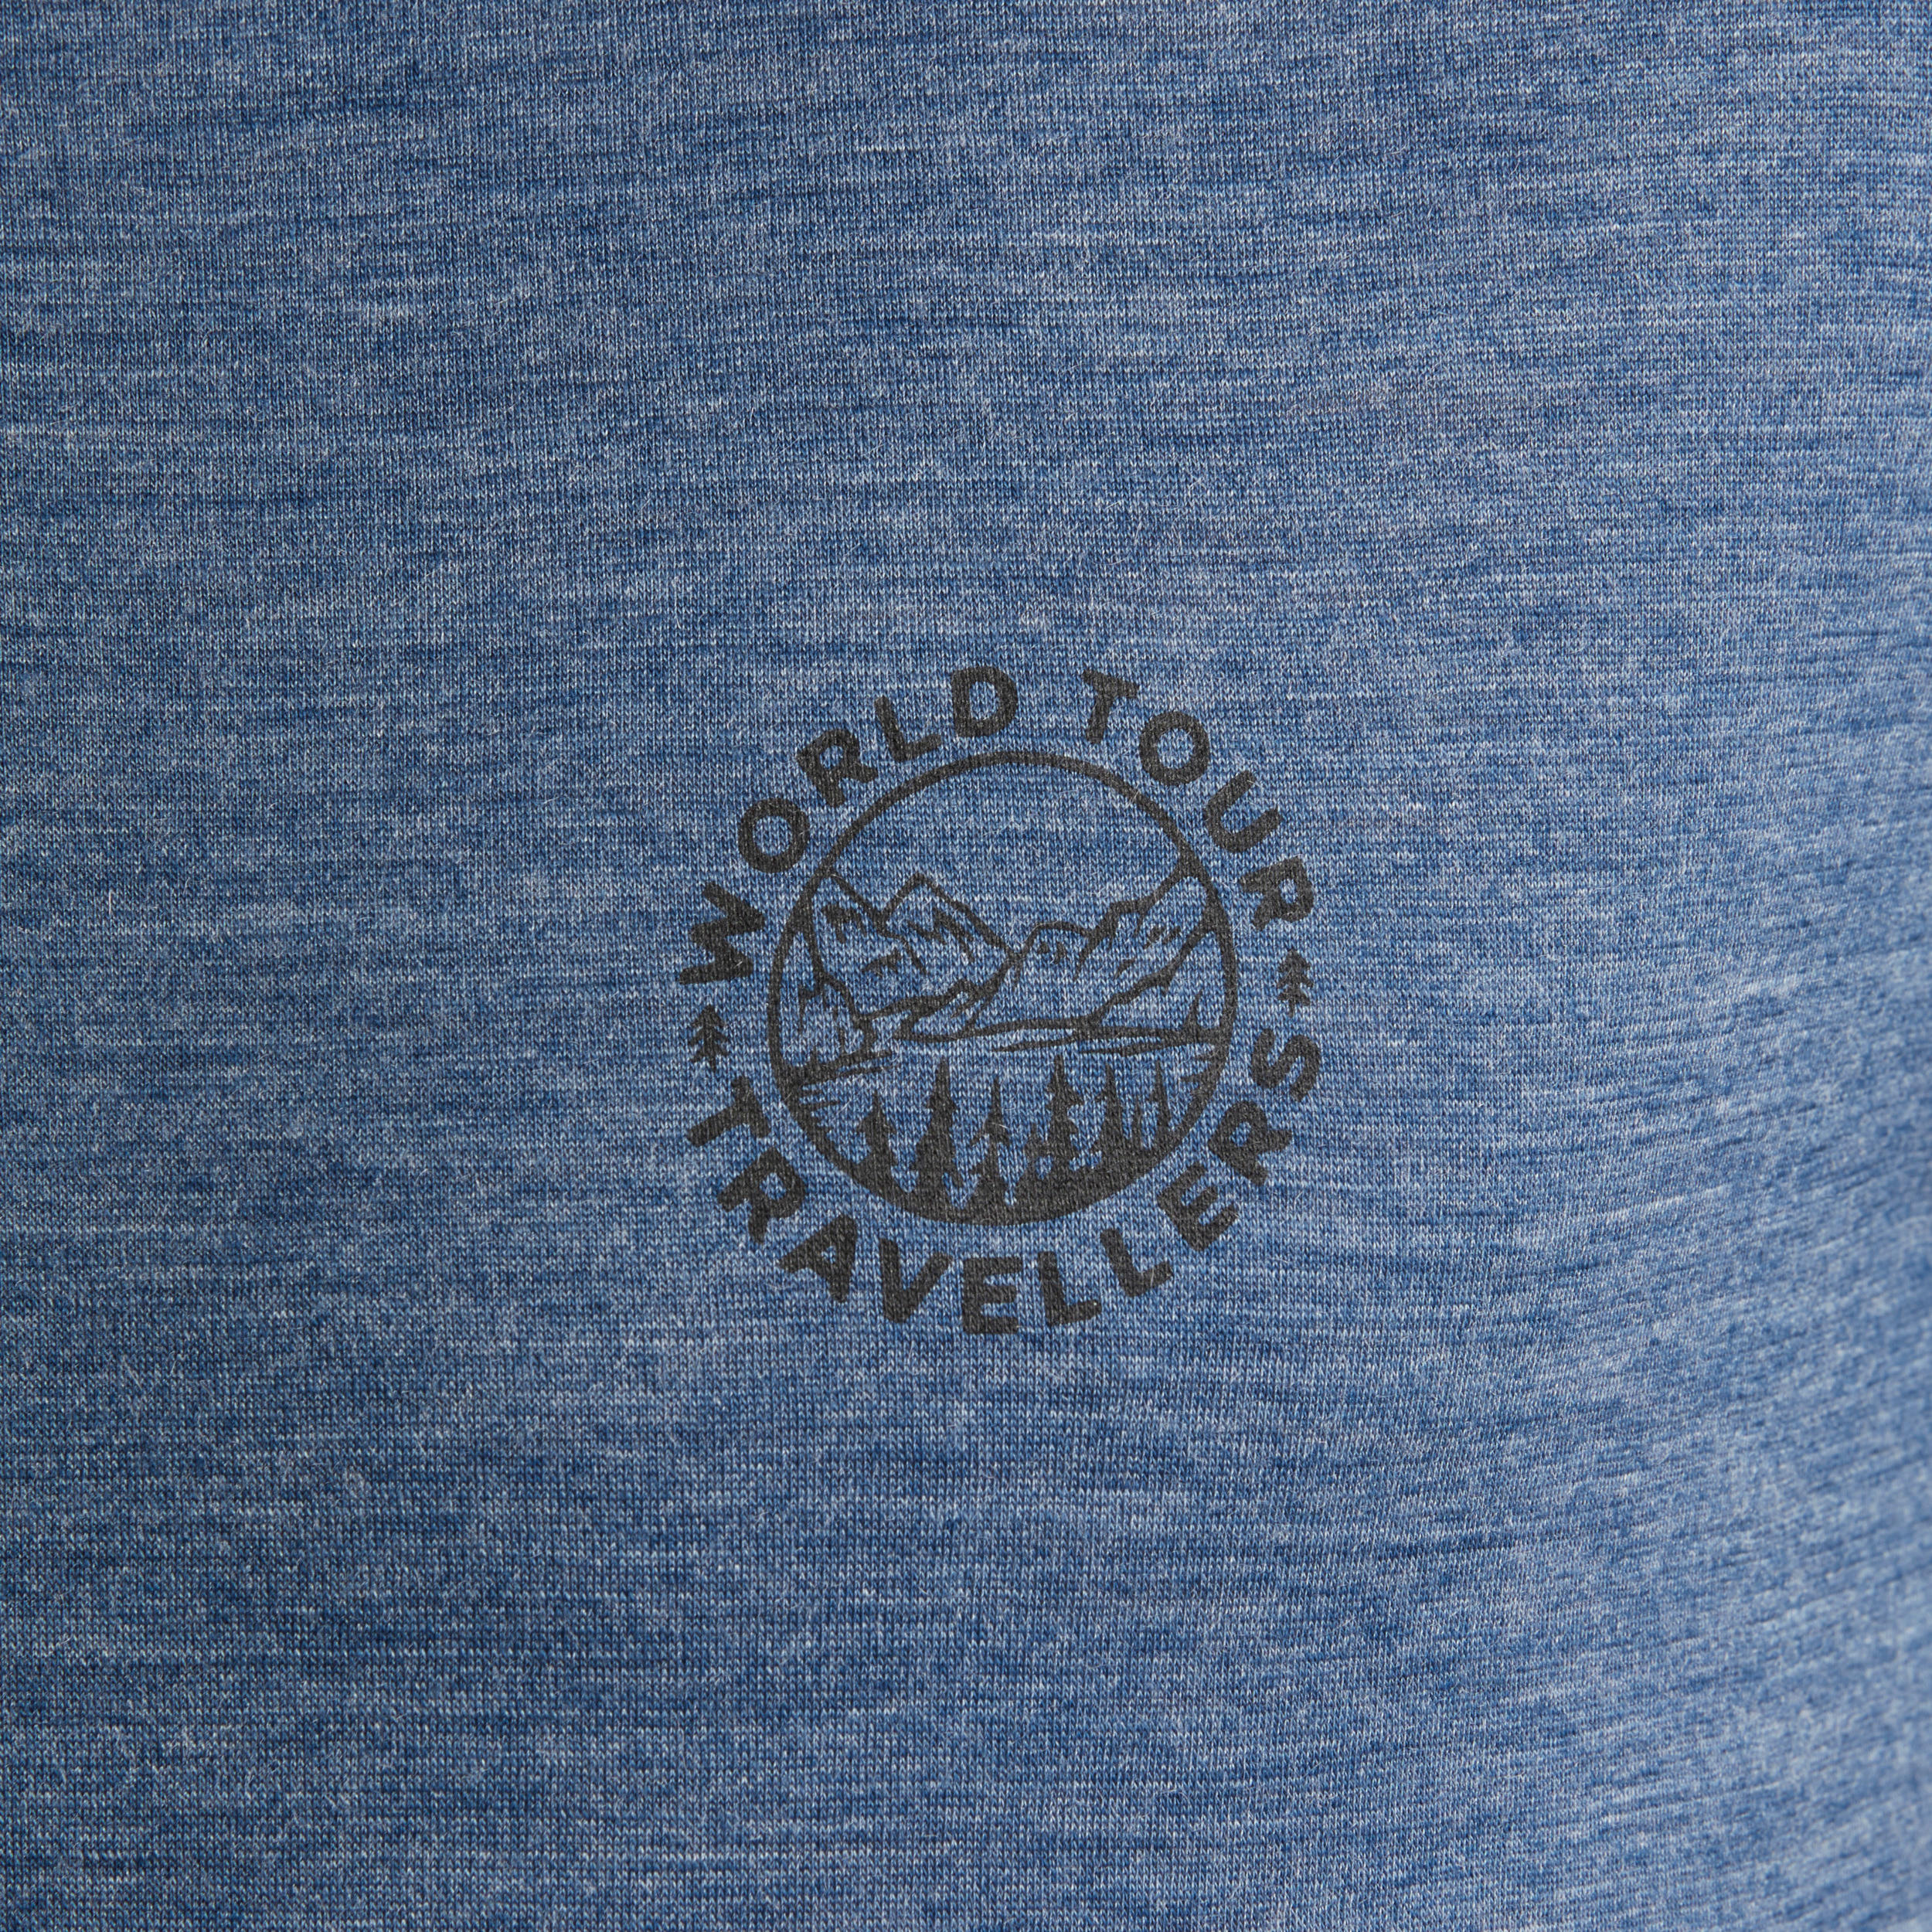 T-shirt en laine mérinos homme – Travel 500 - FORCLAZ